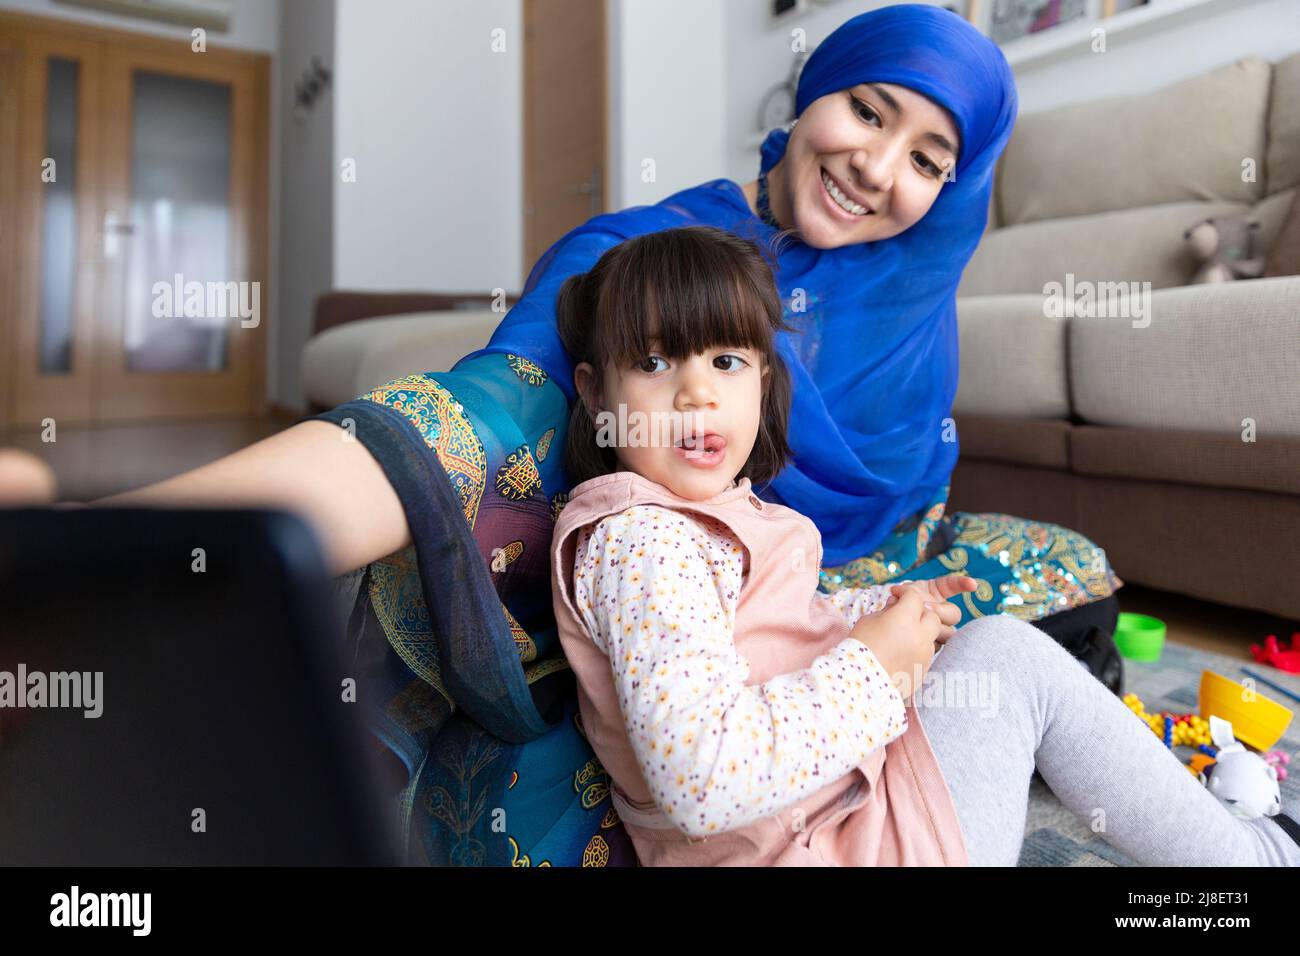 Une jeune femme musulmane prend une photo avec sa fille pendant qu'elle joue dans le salon. Loisirs à la maison. Banque D'Images